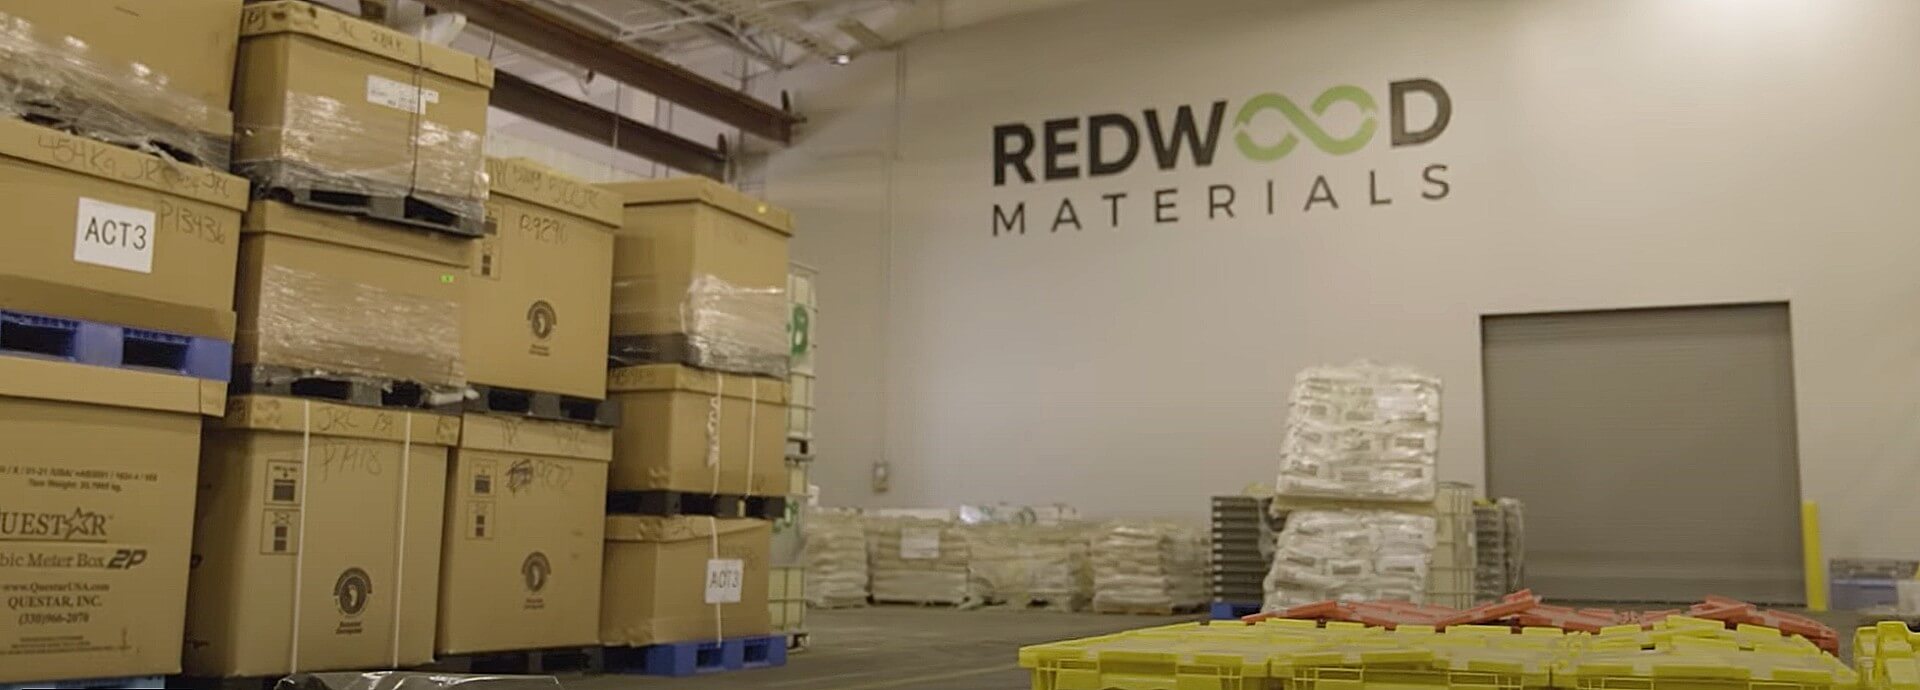 Redwood Materials aprobado para más de $ 100 millones en incentivos fiscales